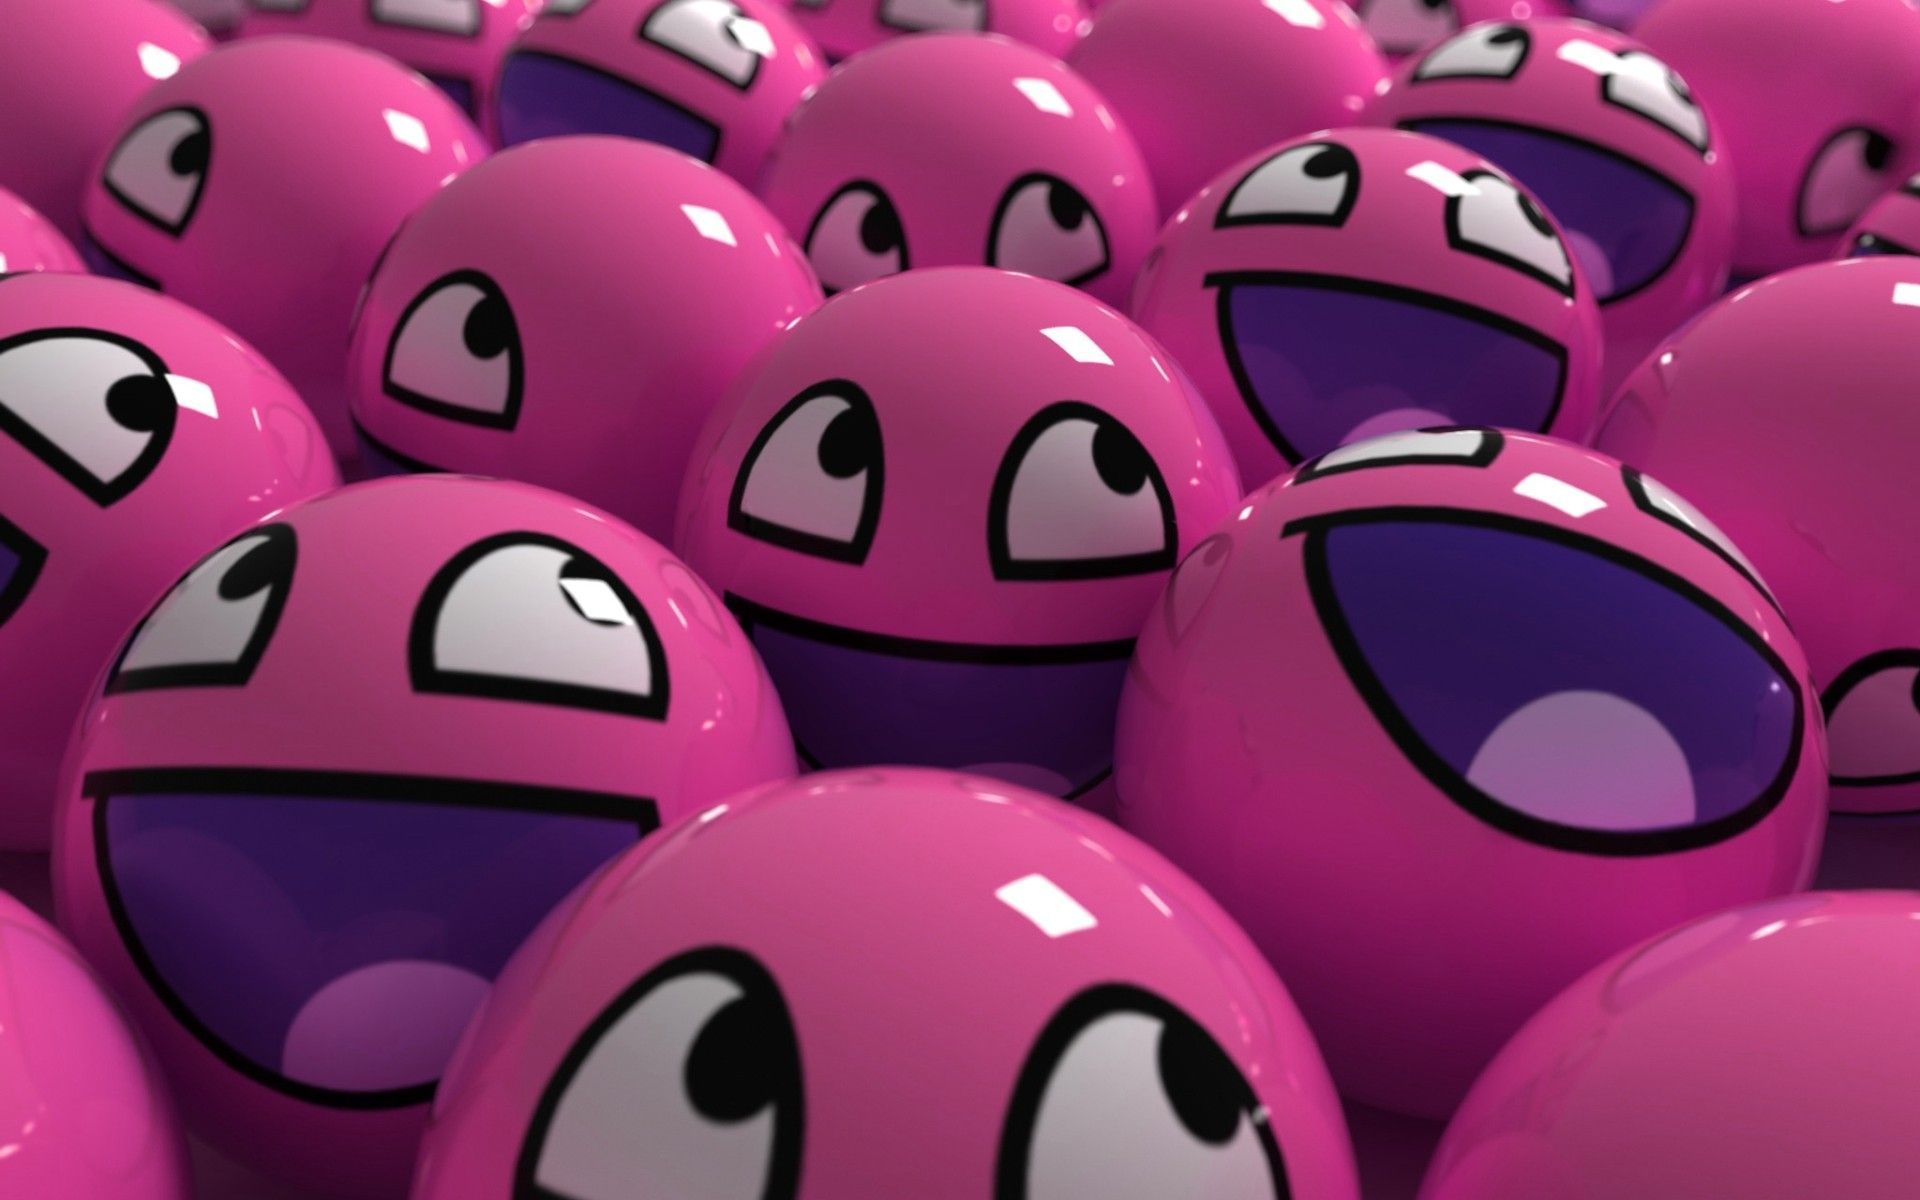 Dark Pink HD Desktop Wallpaper Download Free 6. Cute tumblr